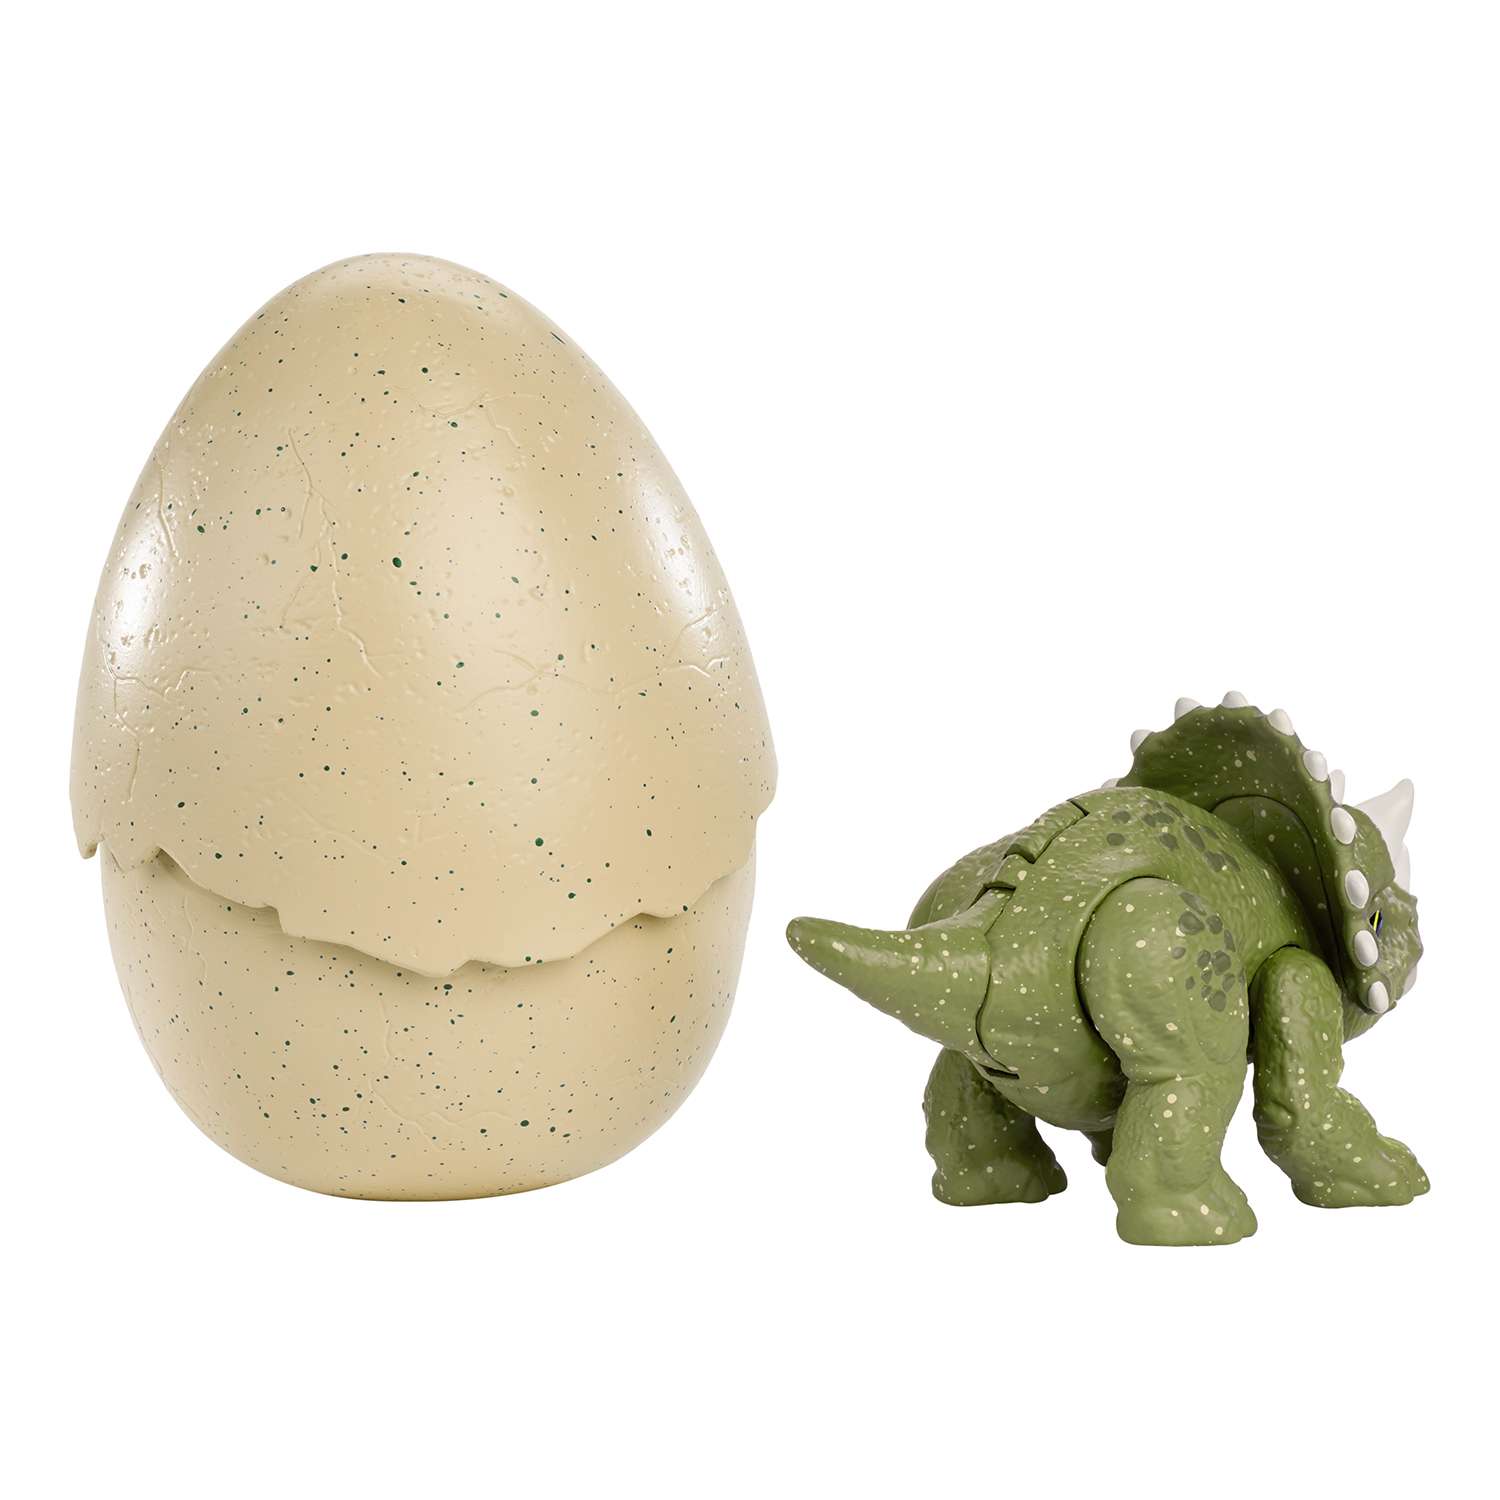 Яйца динозавров купить. Фигурка Jurassic World яйцо. Яйцо динозавра игрушка Jurassic World. Мир Юрского периода яйцо динозавра. Динозавр в яйце Трицератопс.